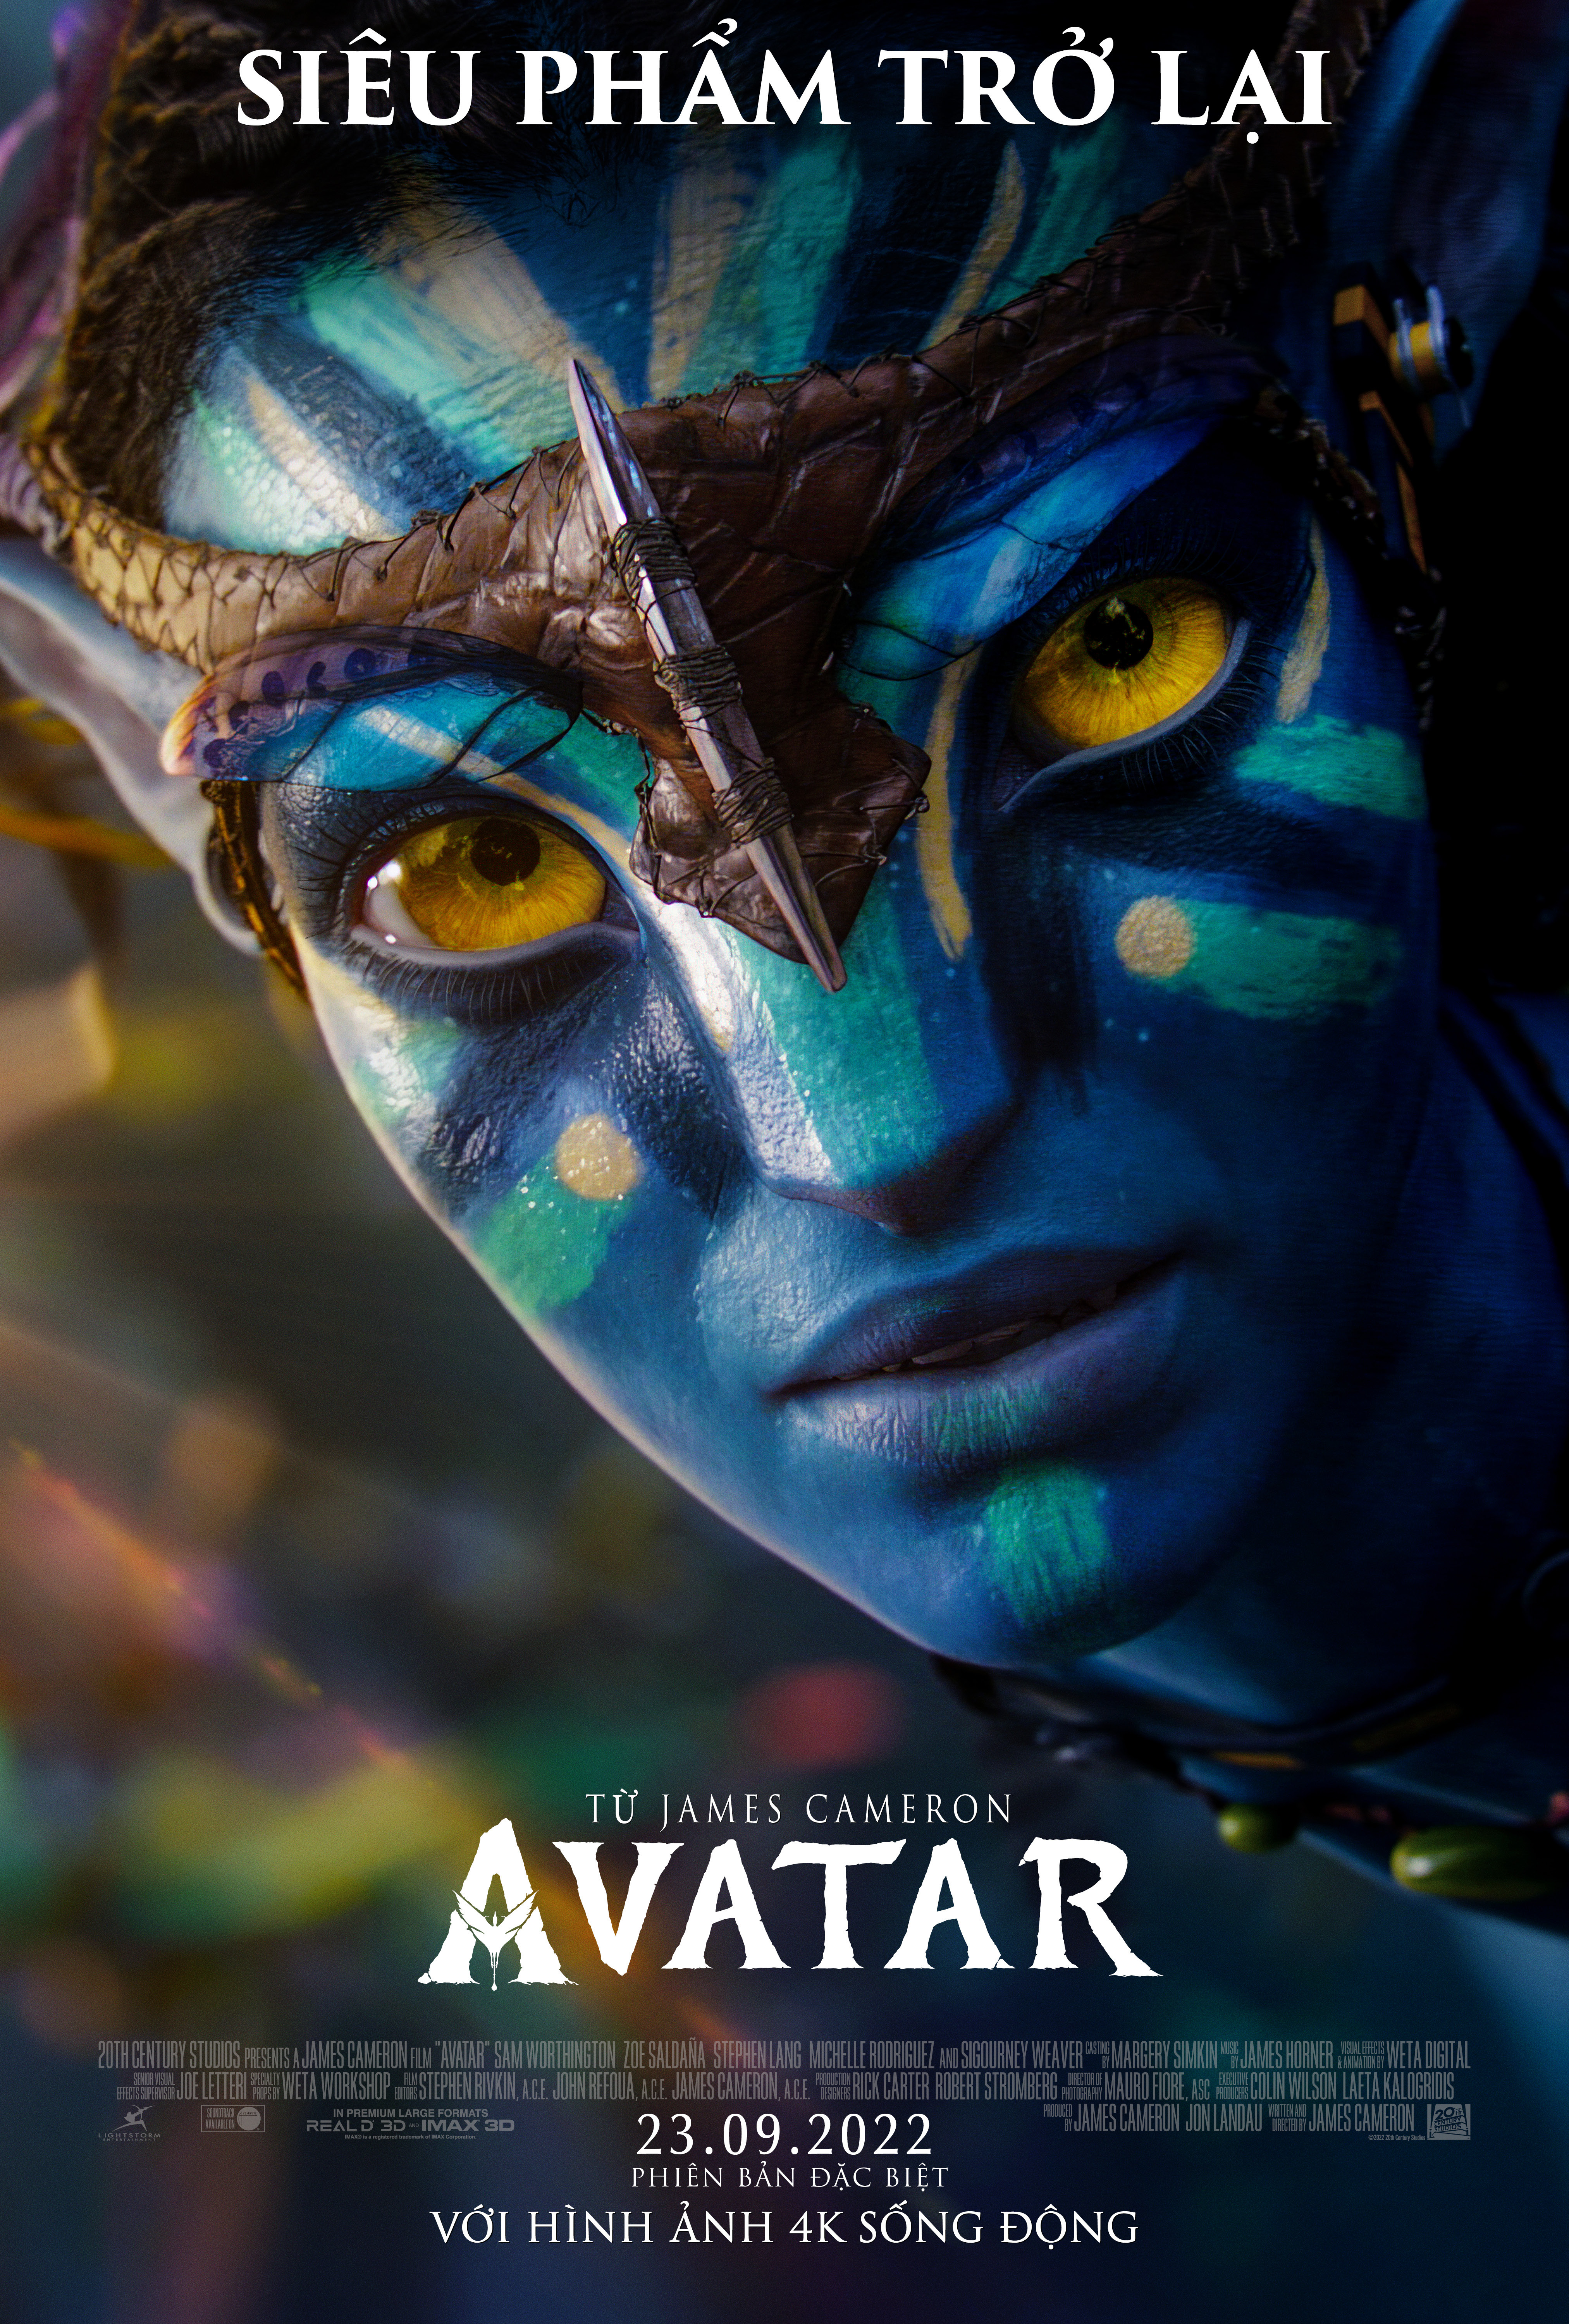 Bộ Biểu Tượng Màu Avatar Minh Họa Chứng Khoán Hình minh họa Sẵn có  Tải  xuống Hình ảnh Ngay bây giờ  Hình đại diện Thanh thiếu niên  Người lớn  Vector  iStock